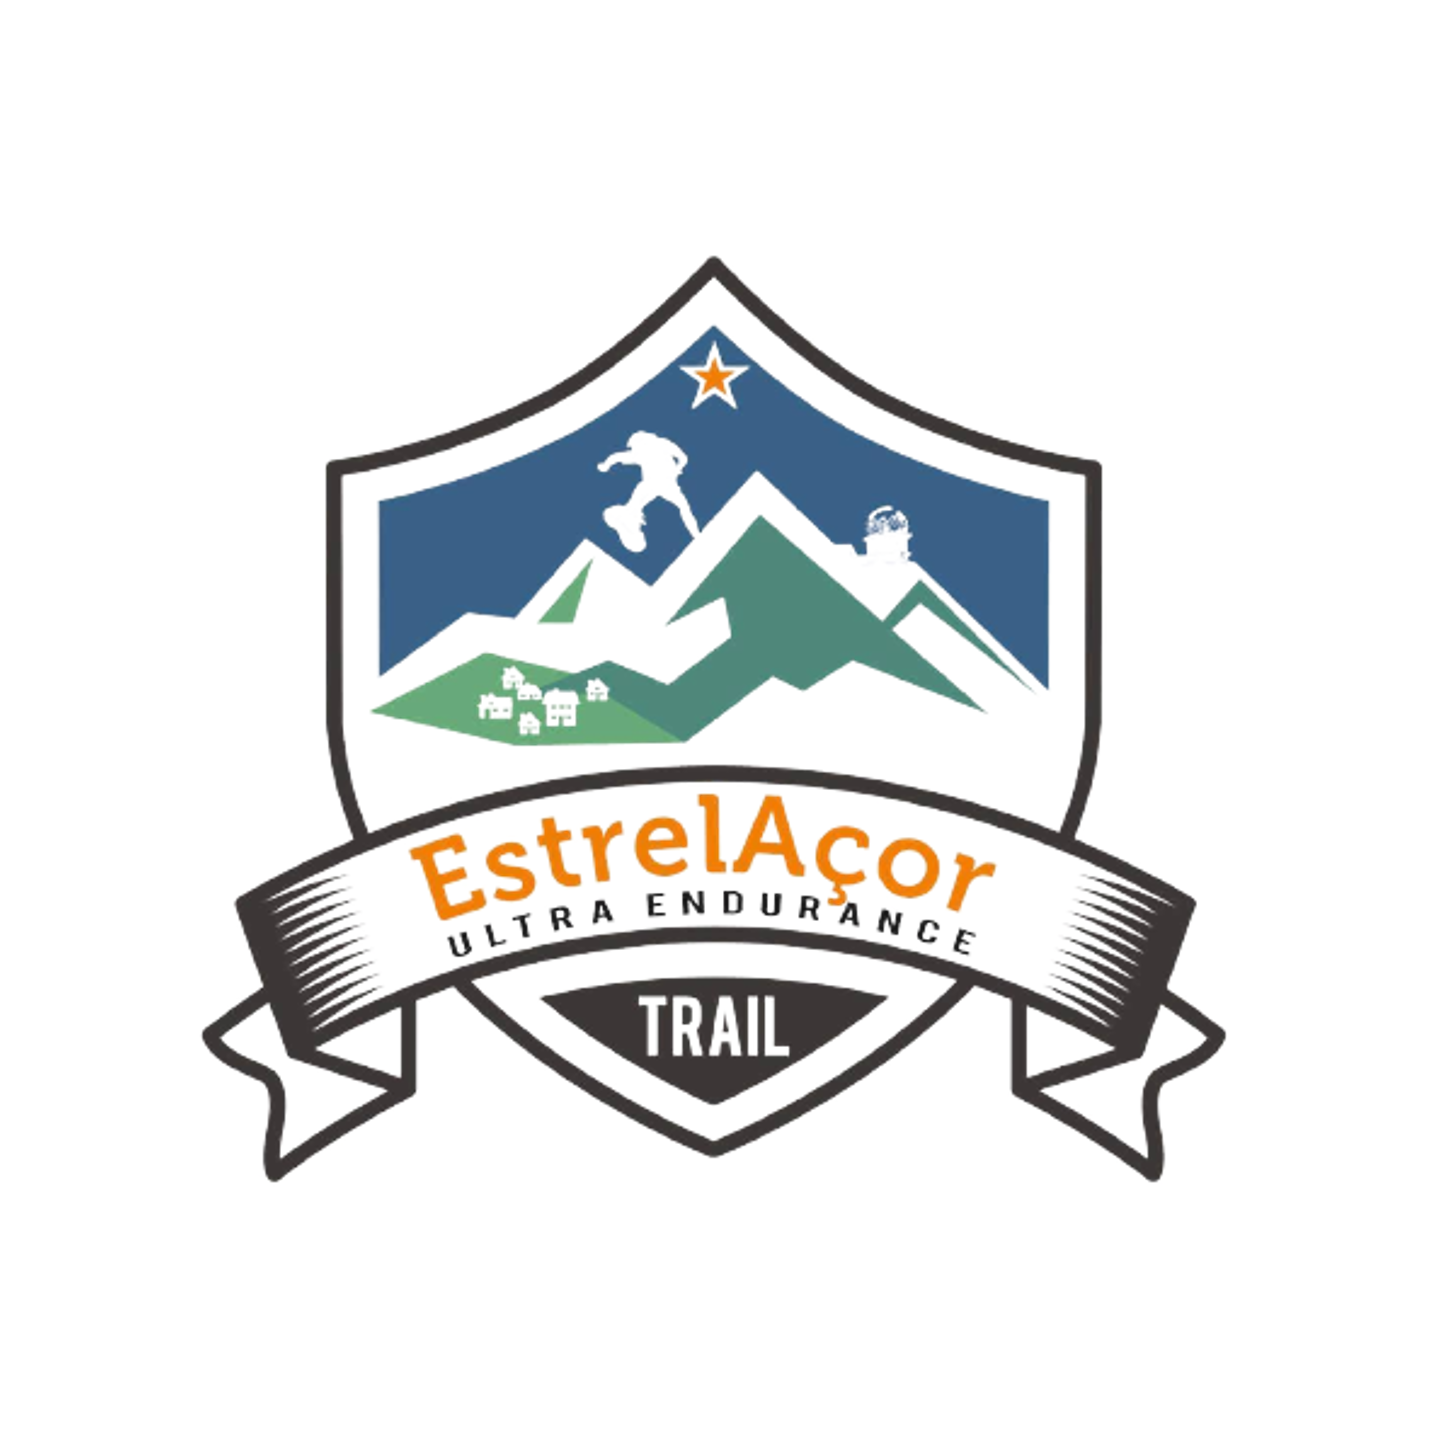 Logo-EstrelAcor-Ultra